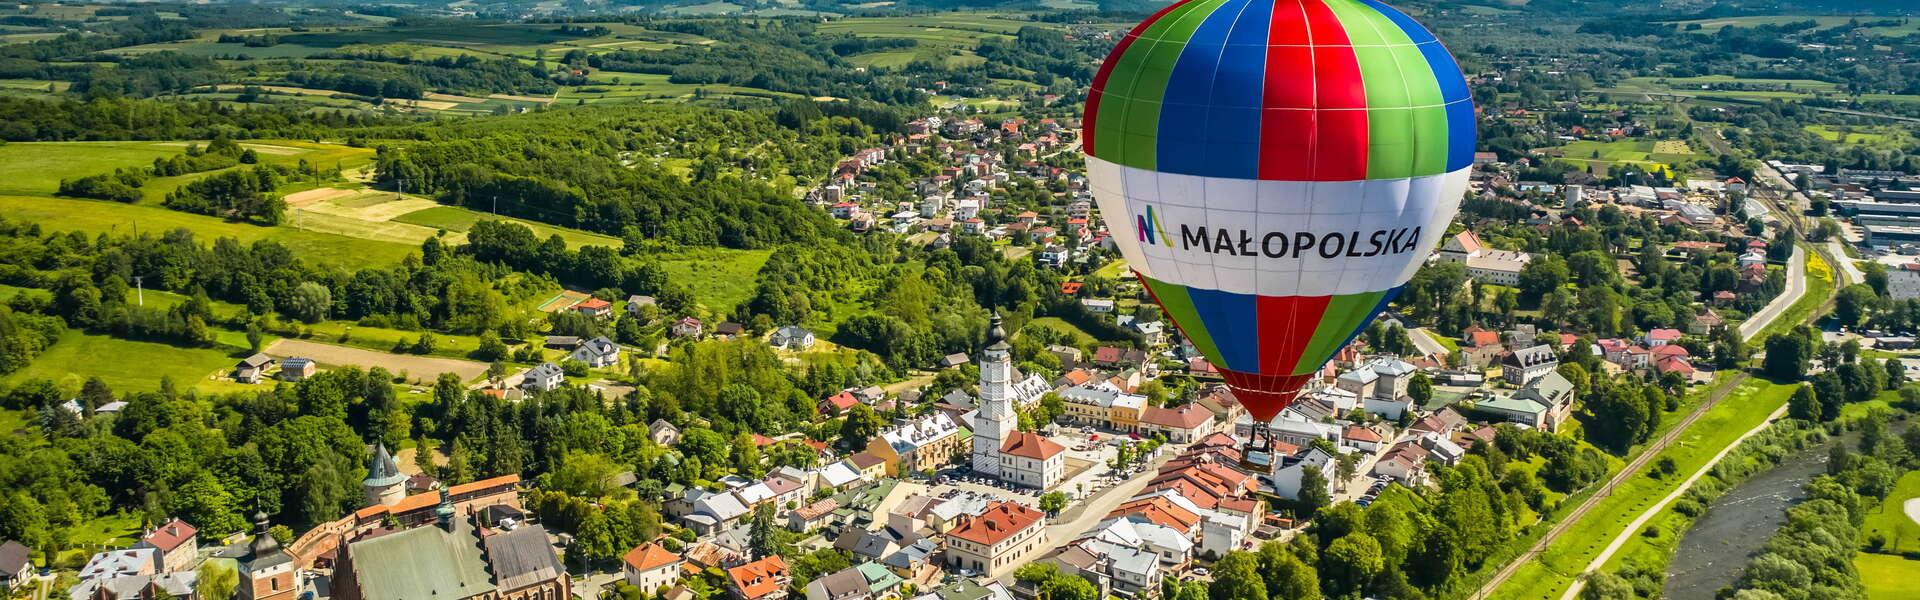 Widok na balon na ogrzane powietrze unoszący się nad miastem Biecz.